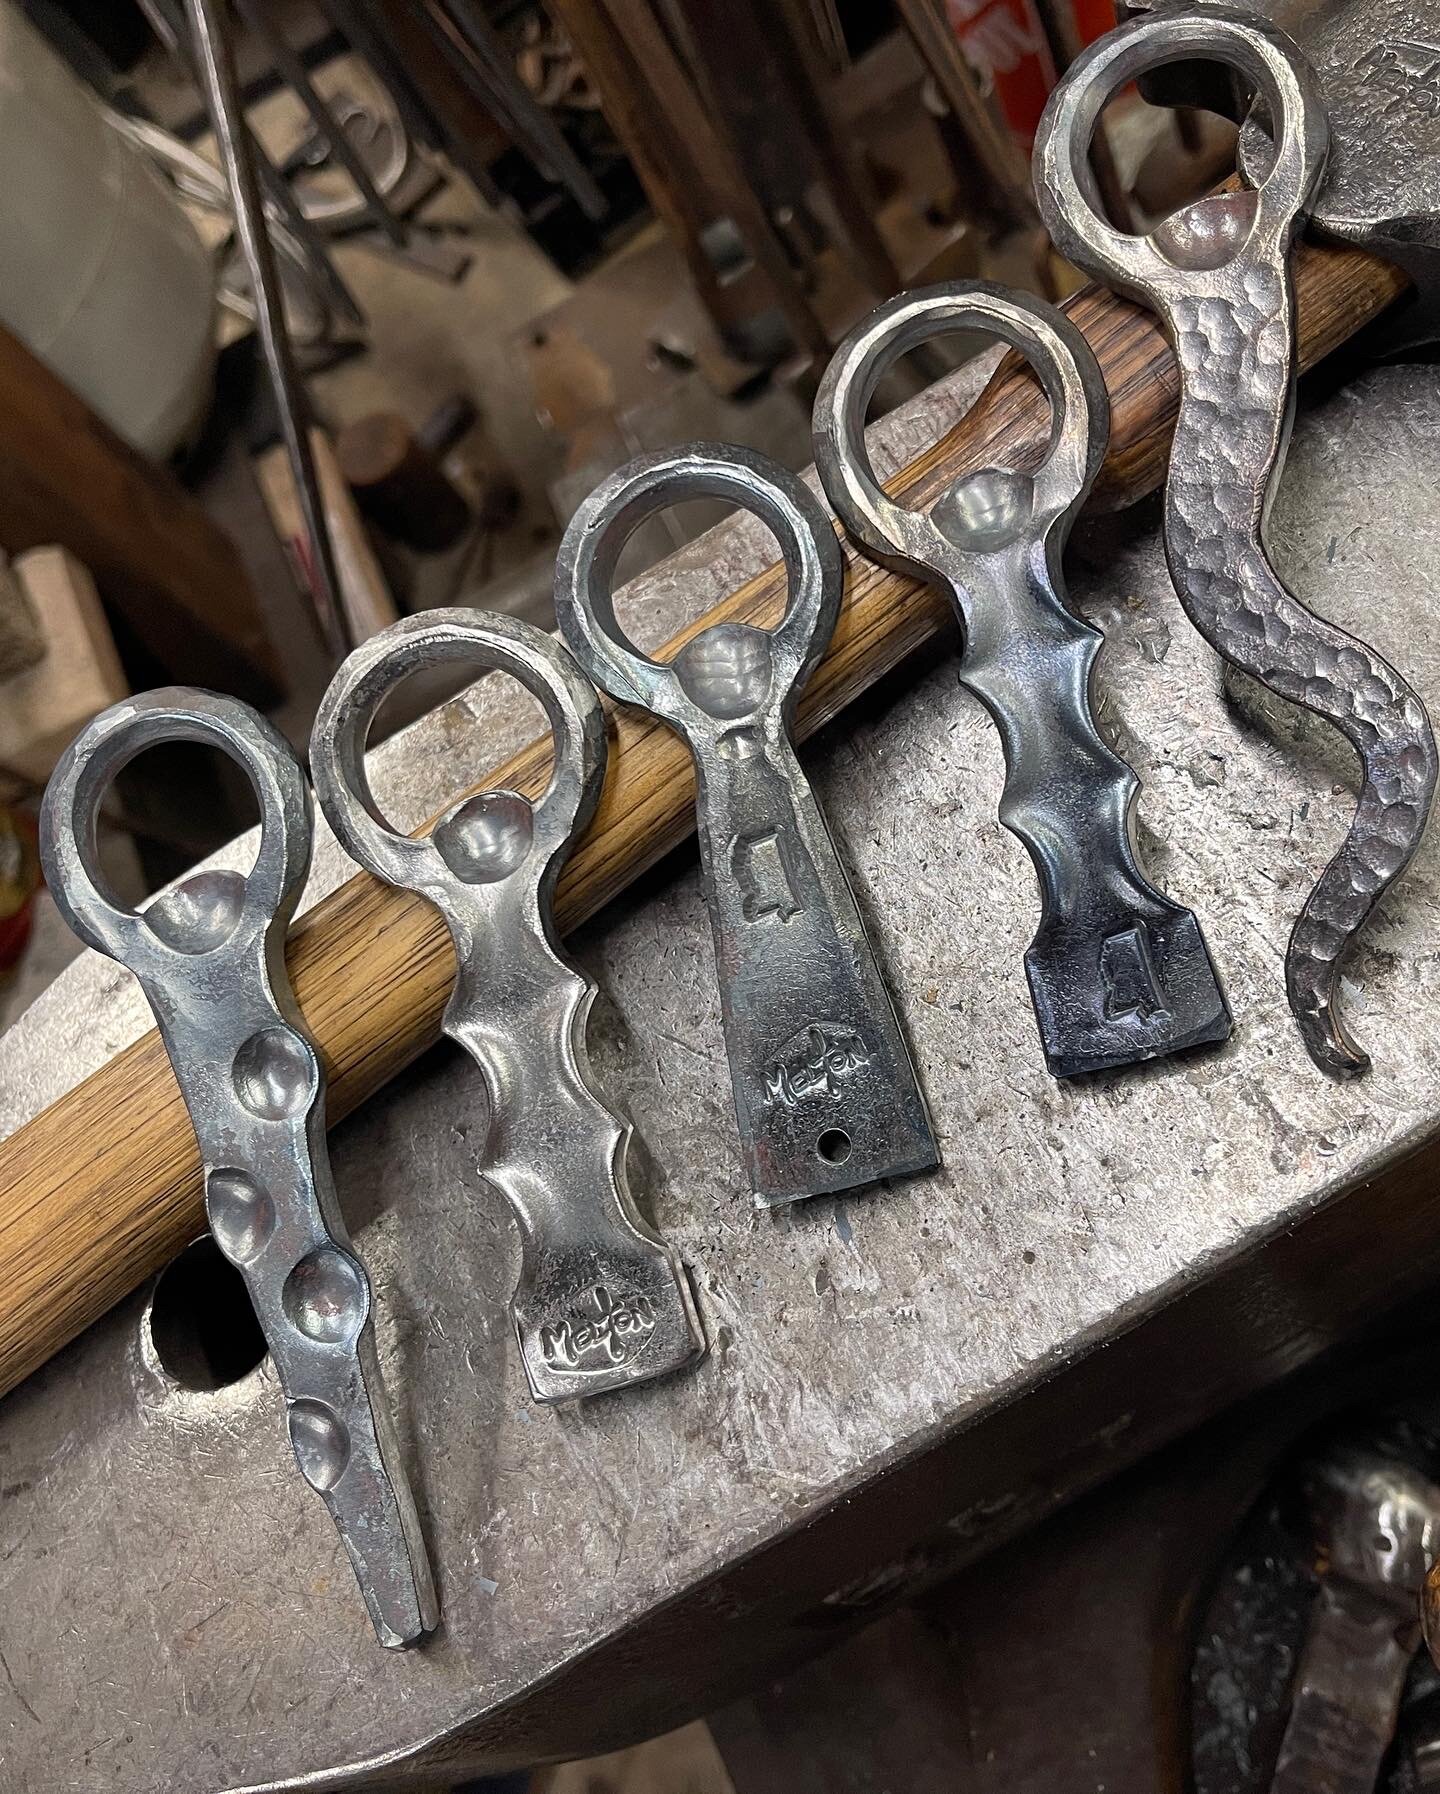 Blacksmithing - Forging a bottle opener 